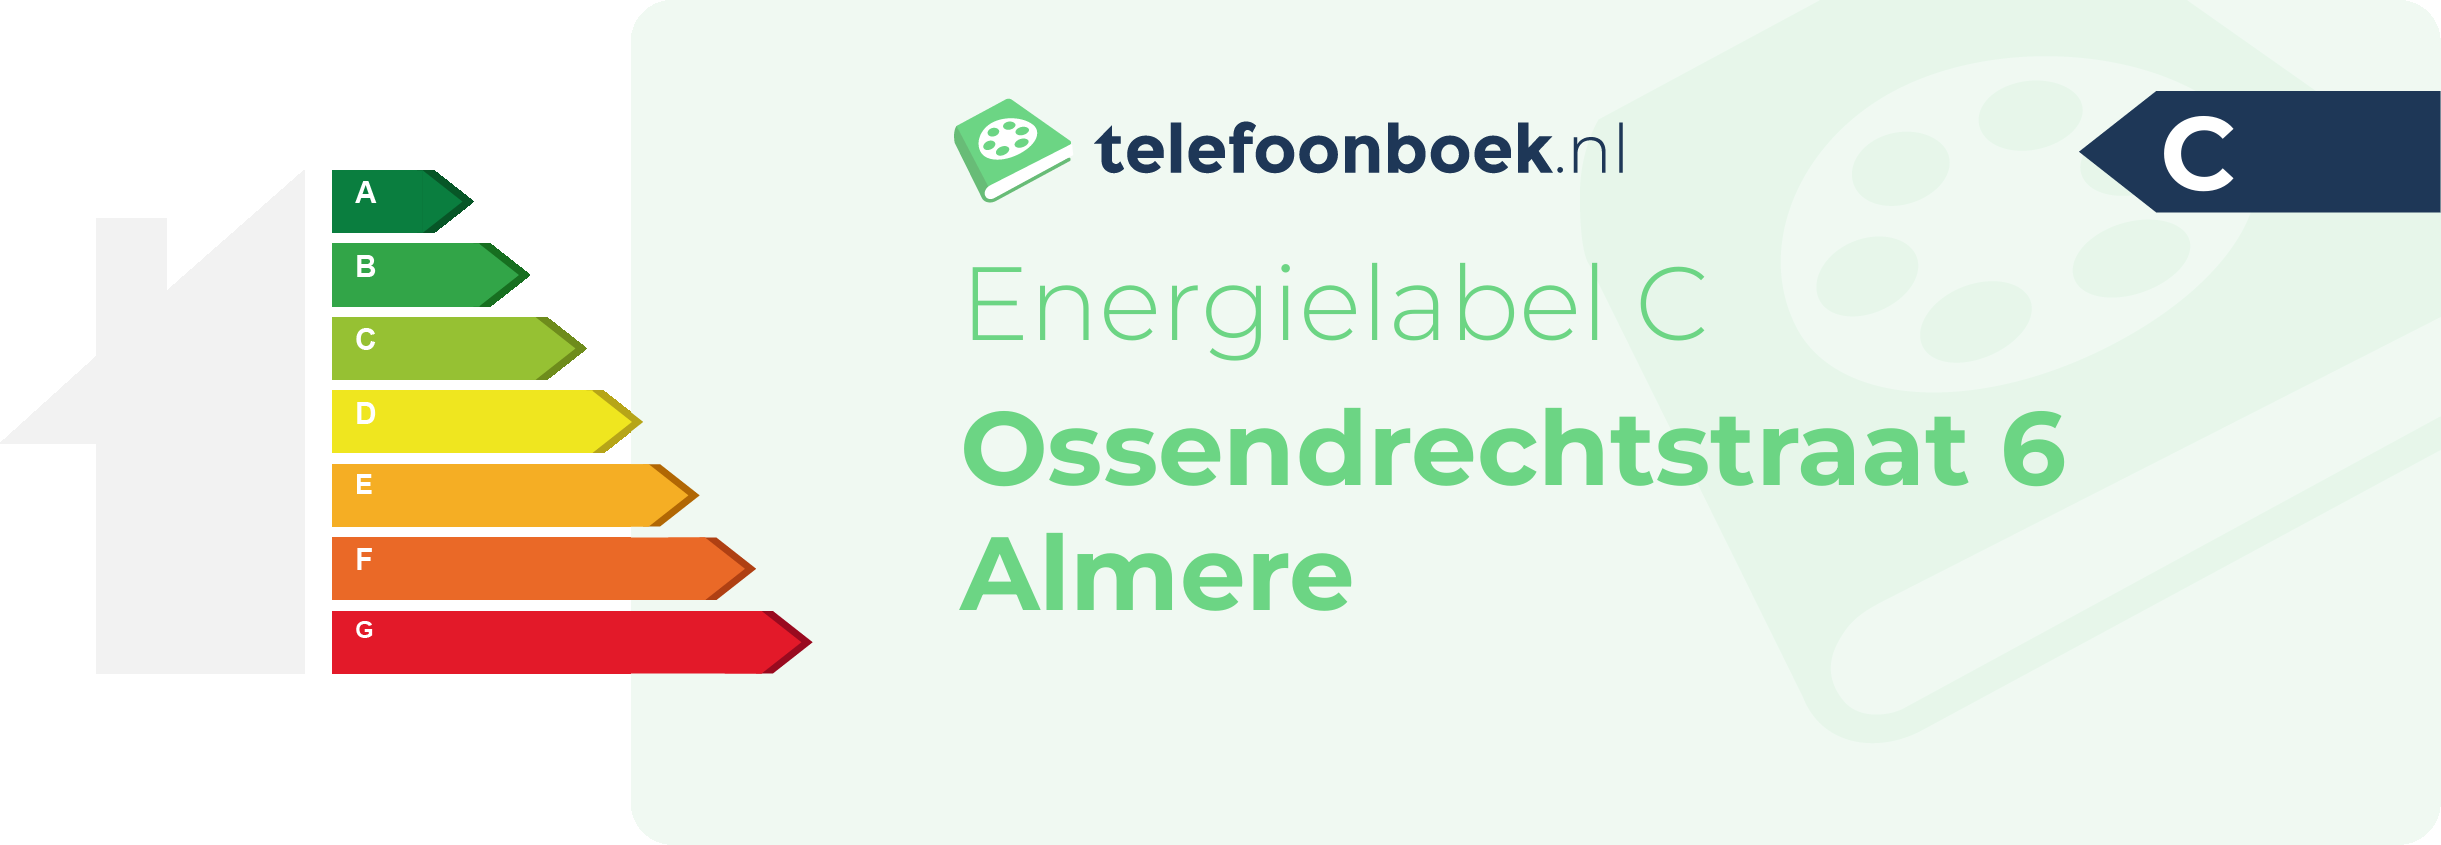 Energielabel Ossendrechtstraat 6 Almere